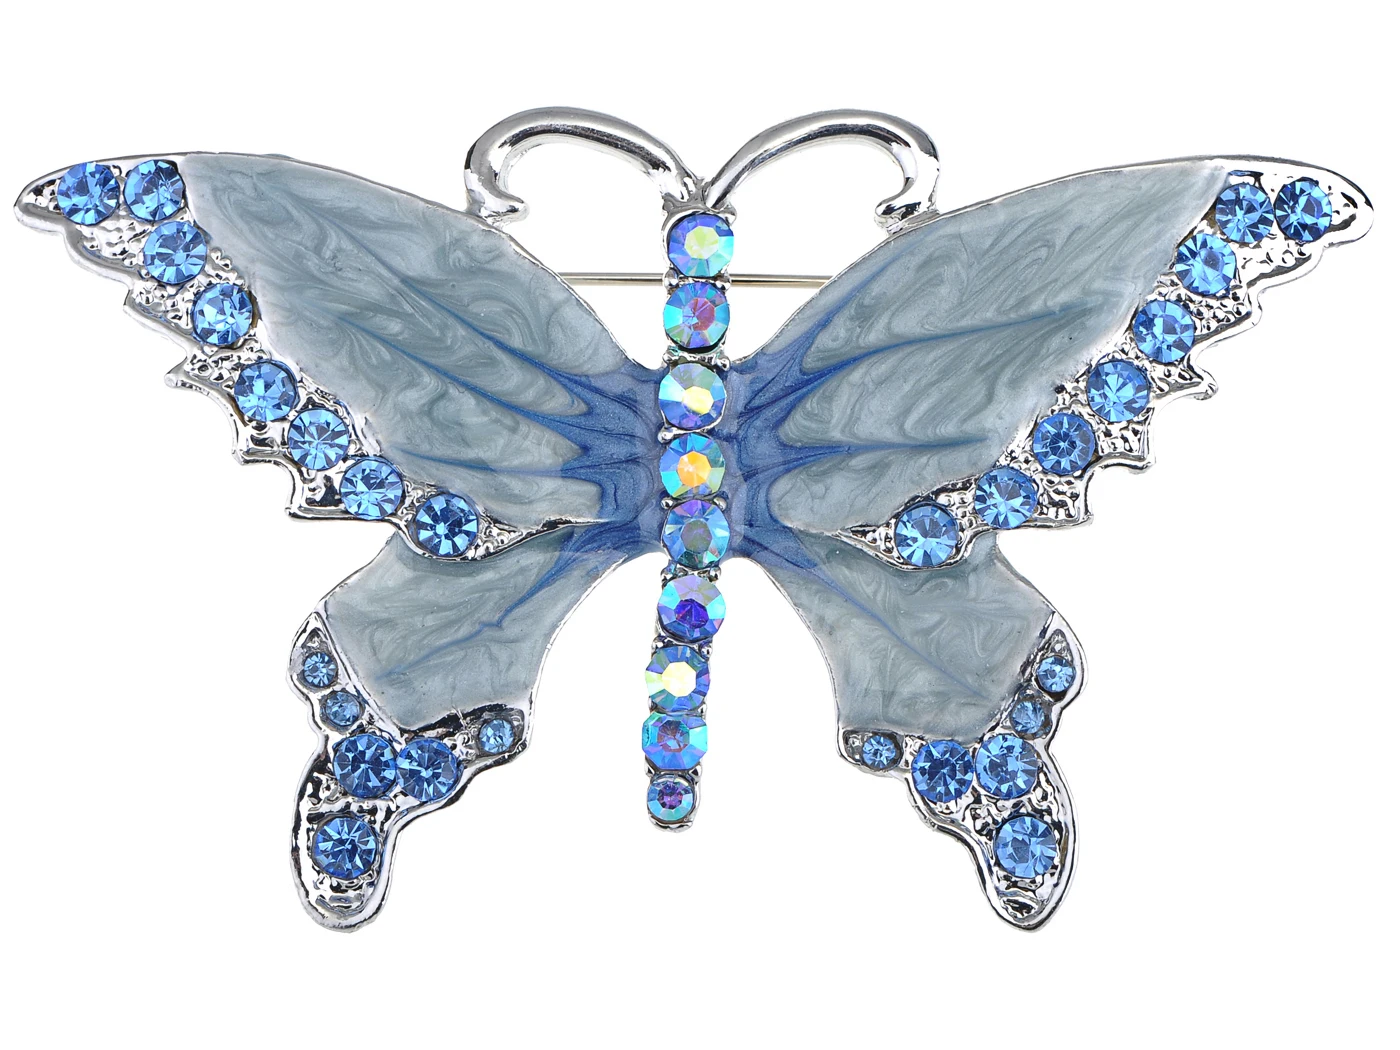 

Серебристый цвет, Aurora Borealis сапфировый синий кристалл разразы эмалированная брошь с бабочкой Pin